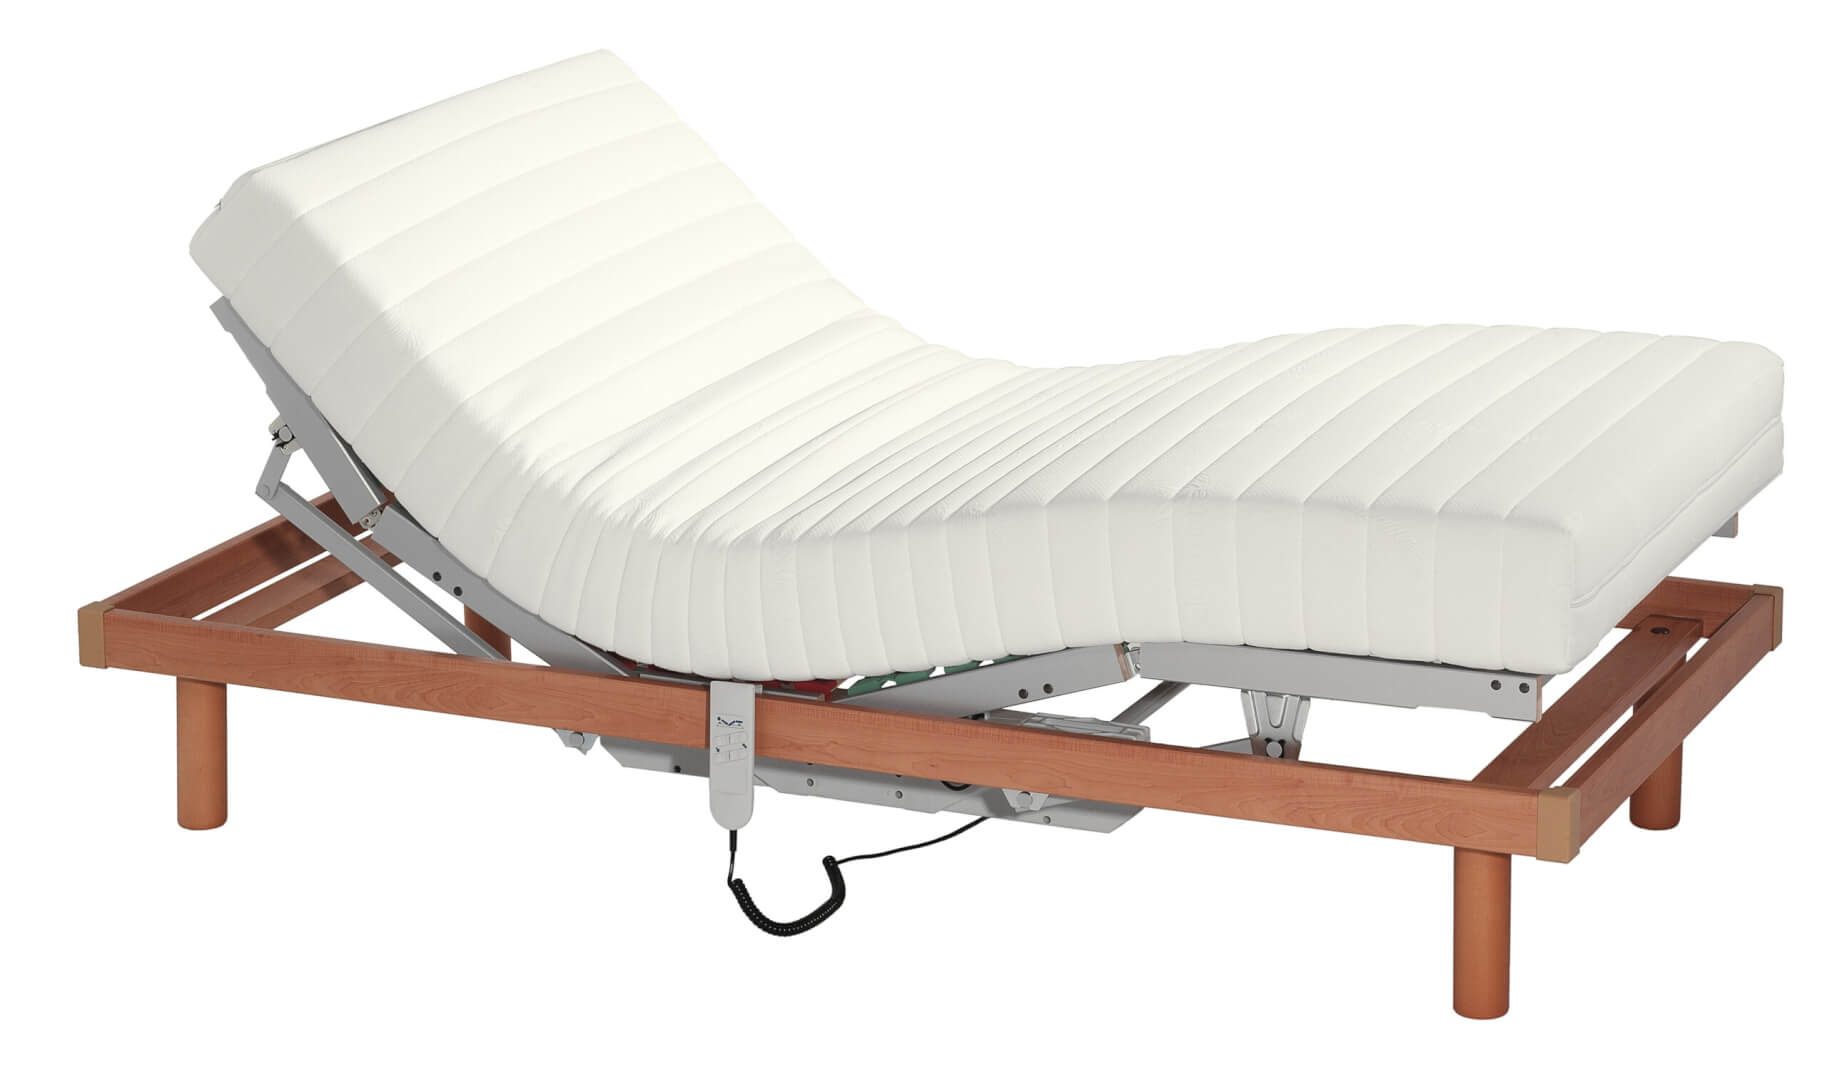 Una cama articulada para ayudar a levantarse de la cama a personas mayores. 